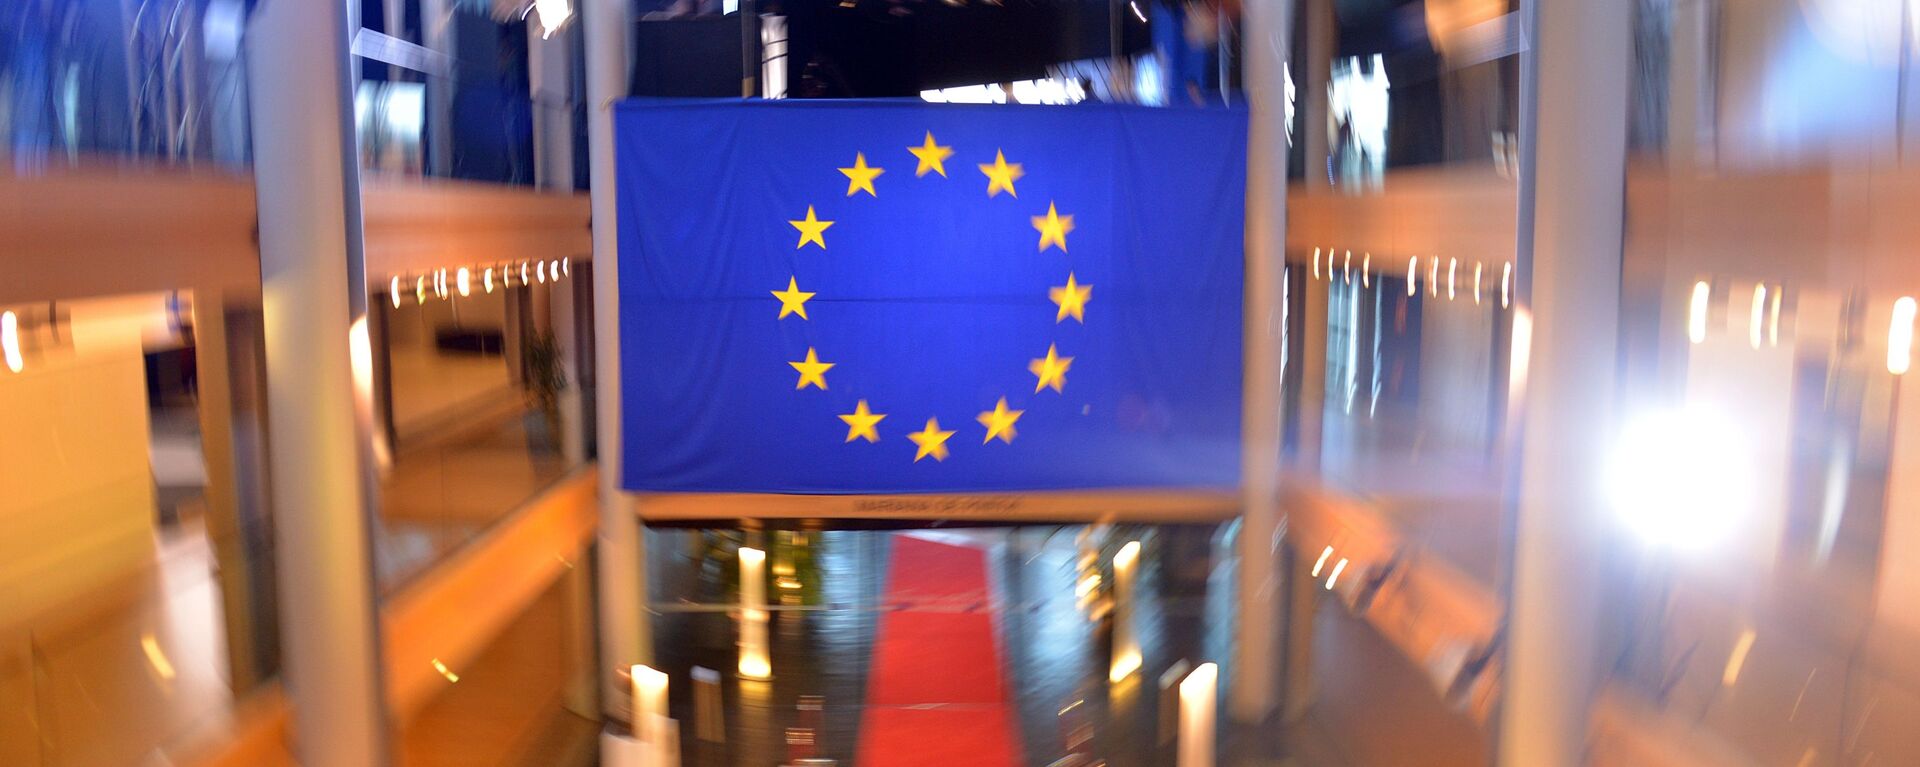 Флаг Евросоюза в главном здании Совета Европы в Страсбурге - Sputnik Латвия, 1920, 14.12.2021